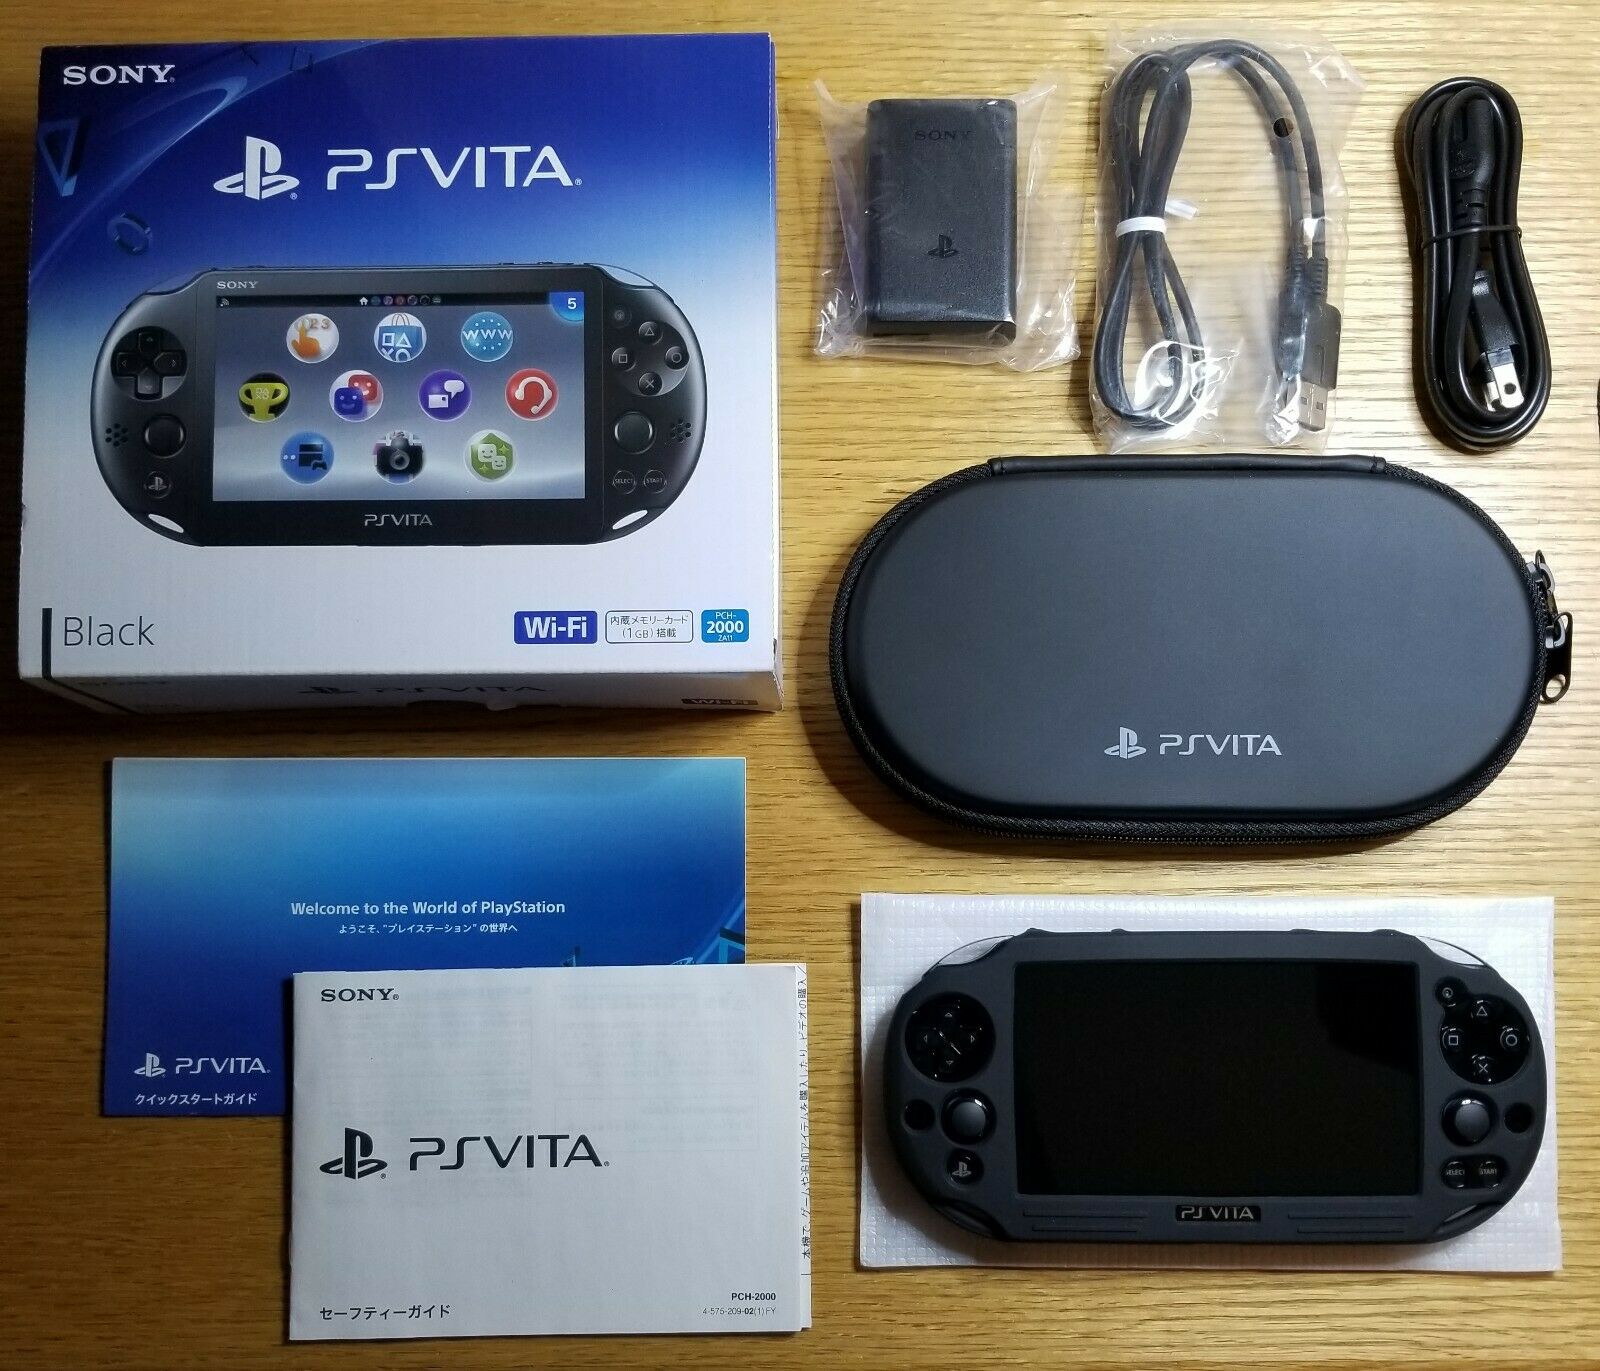 PlaystationVita 2000 PS Vita Slim BLACK + Extras *READ DESCRIPTION